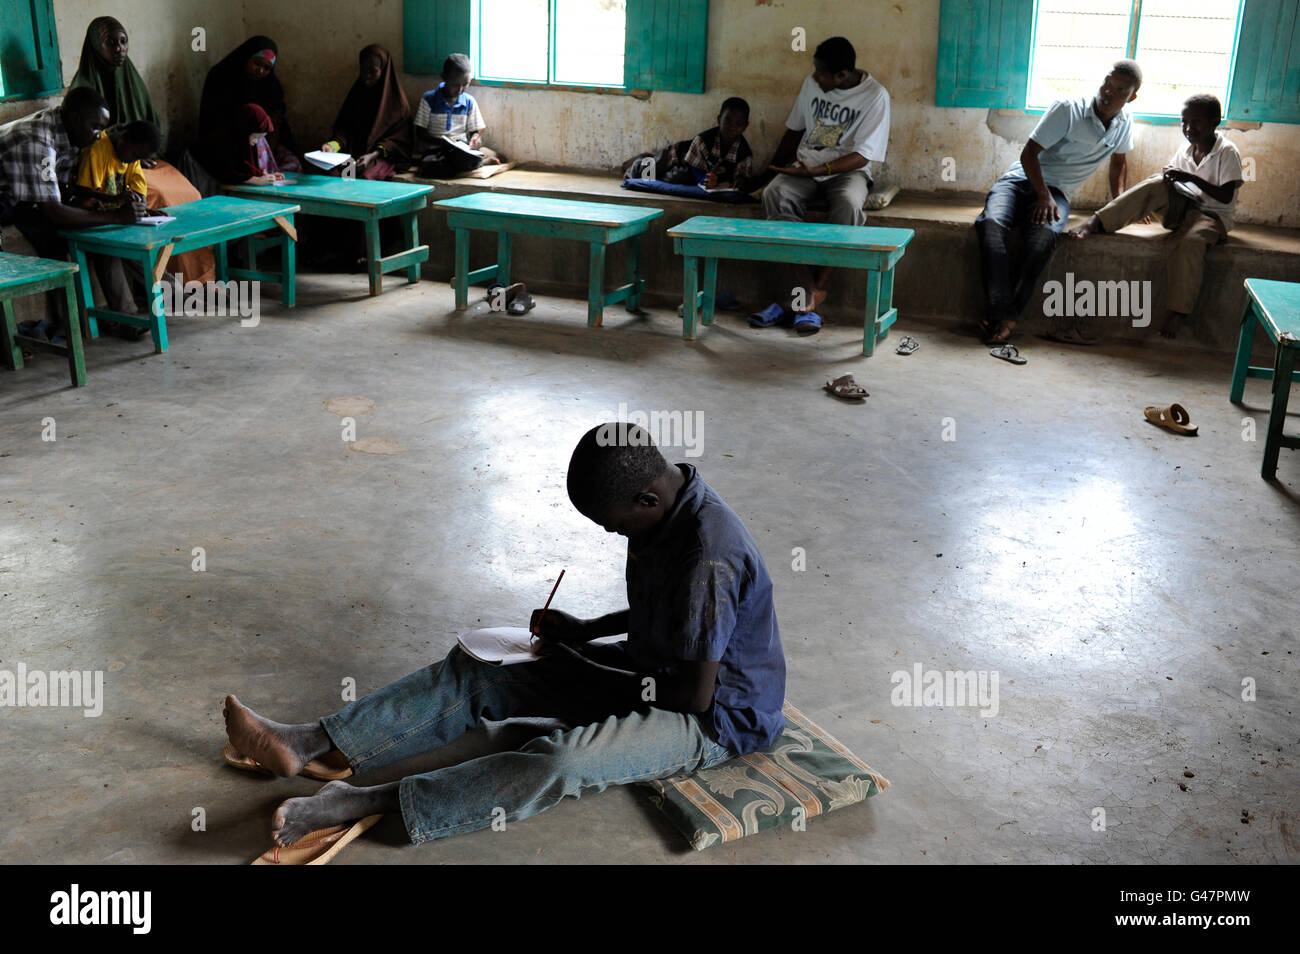 Kenia Turkana-Region, Flüchtling Lager Kakuma, wo 80,000 Flüchtlinge leben, JESUIT REFUGEE SERVICE Schule und Trauma Beratung / KENIA Fluechtlingslager Kakuma in der Turkana-Region, Hier Leben ca. 80.000 Fluechtlinge, JRS JESUIT REFUGEE SERVICE Schule Und Traumabehandlung Stockfoto